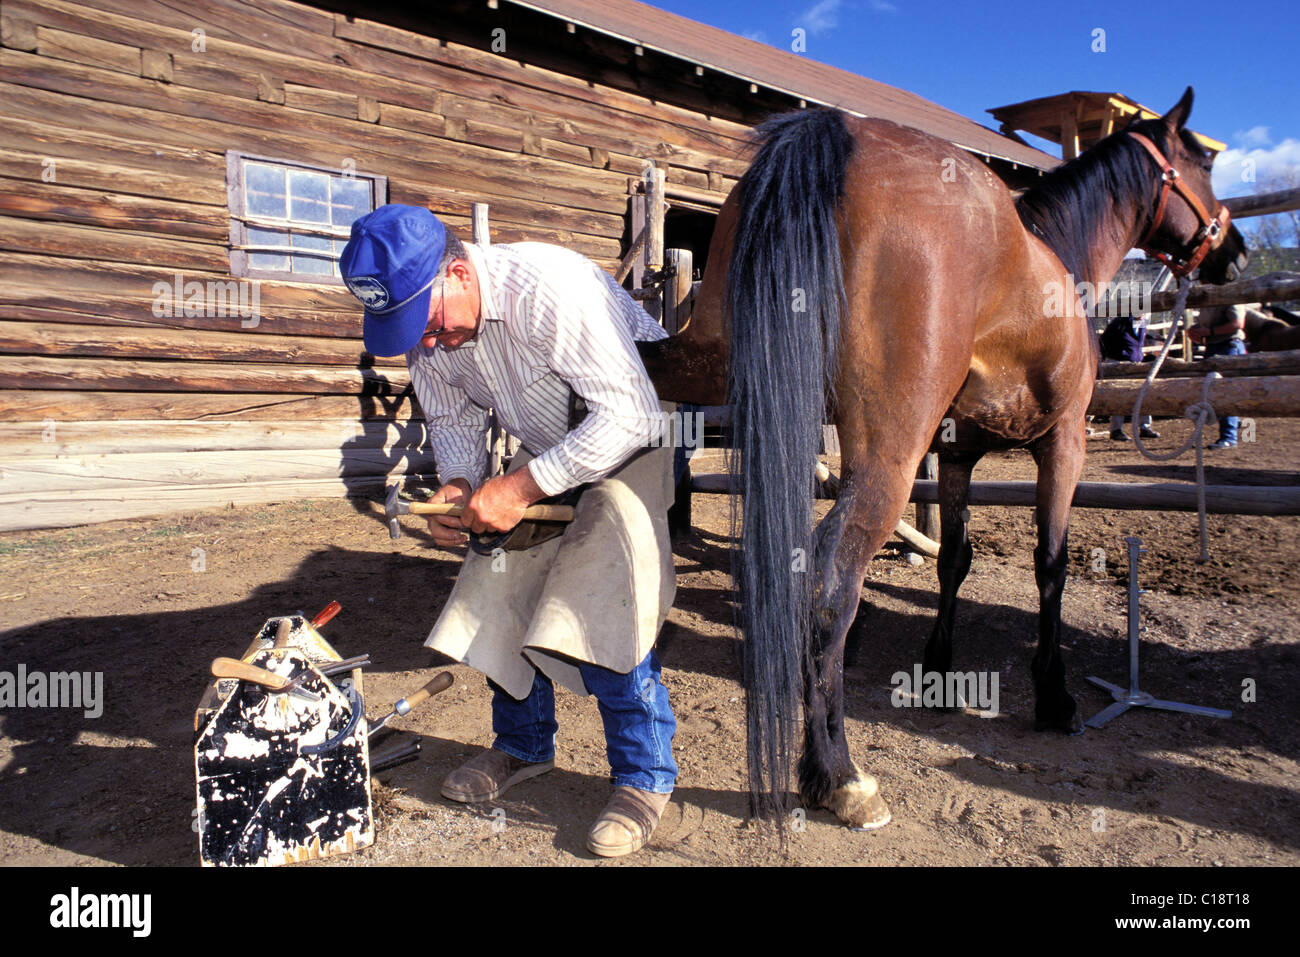 Estados Unidos, Dubois, Wyoming, dude ranch, Bitterroot Ranch, el herrero Foto de stock